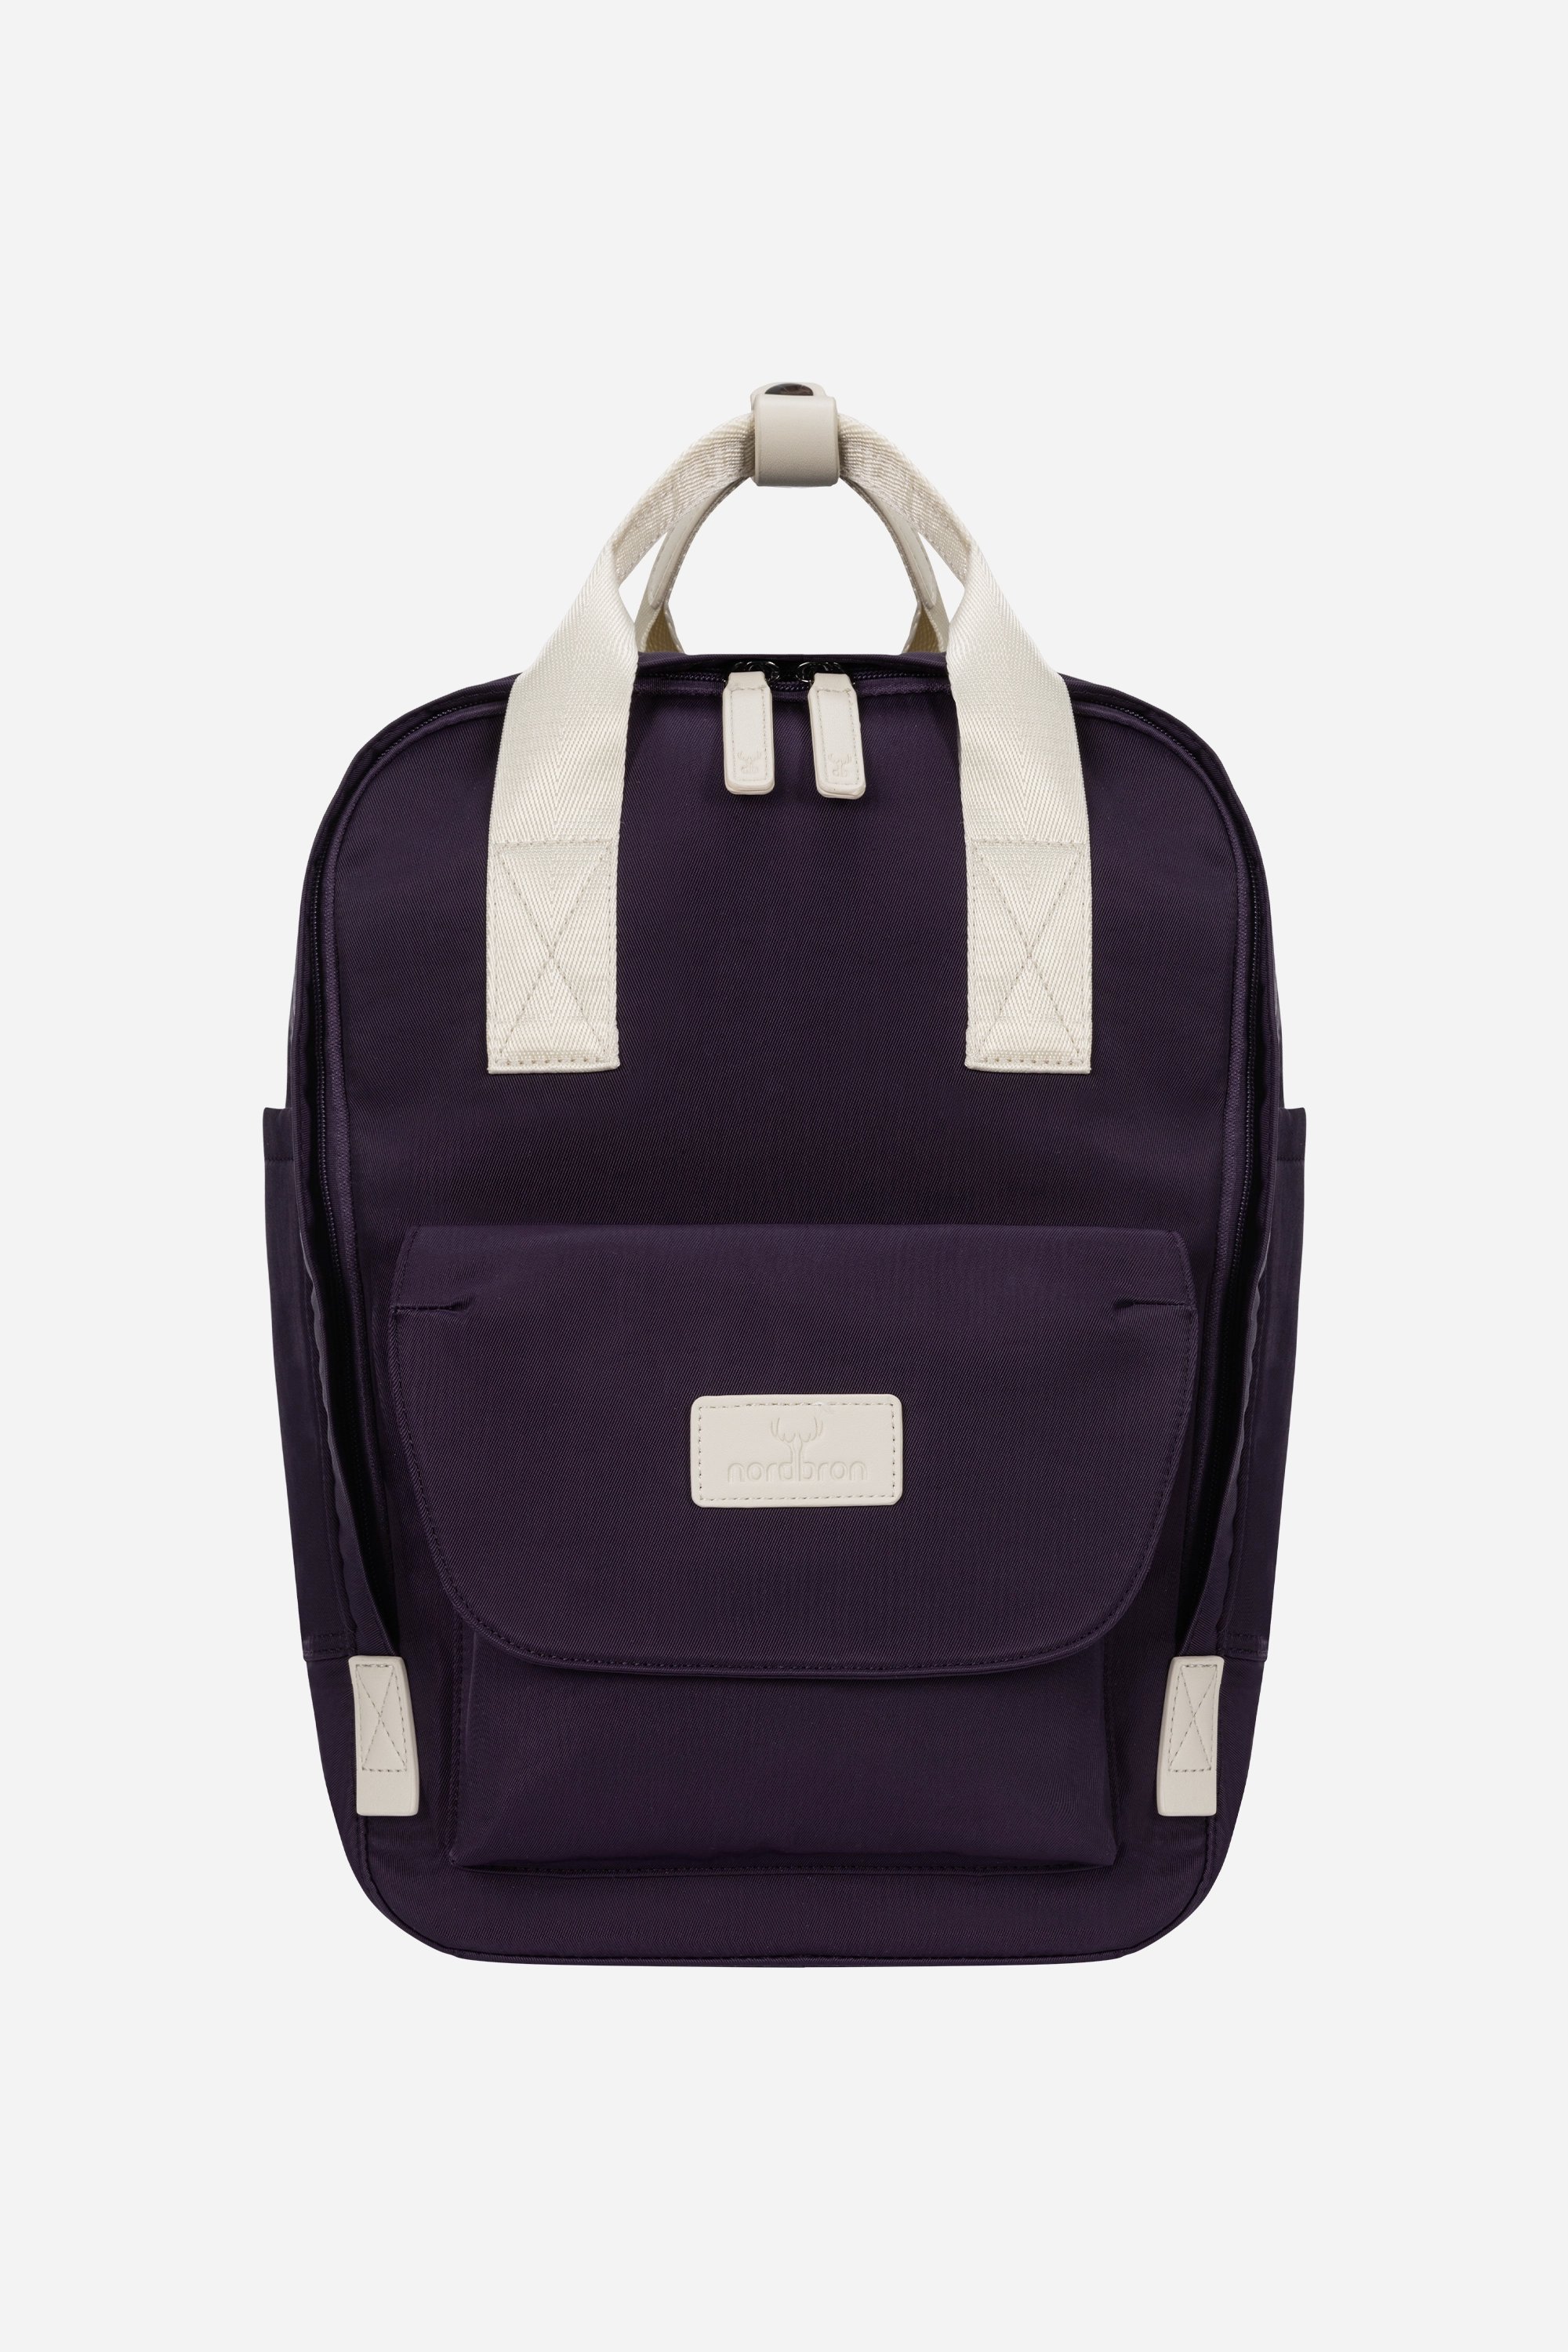 Lucerne Nordbron Backpack - Purple